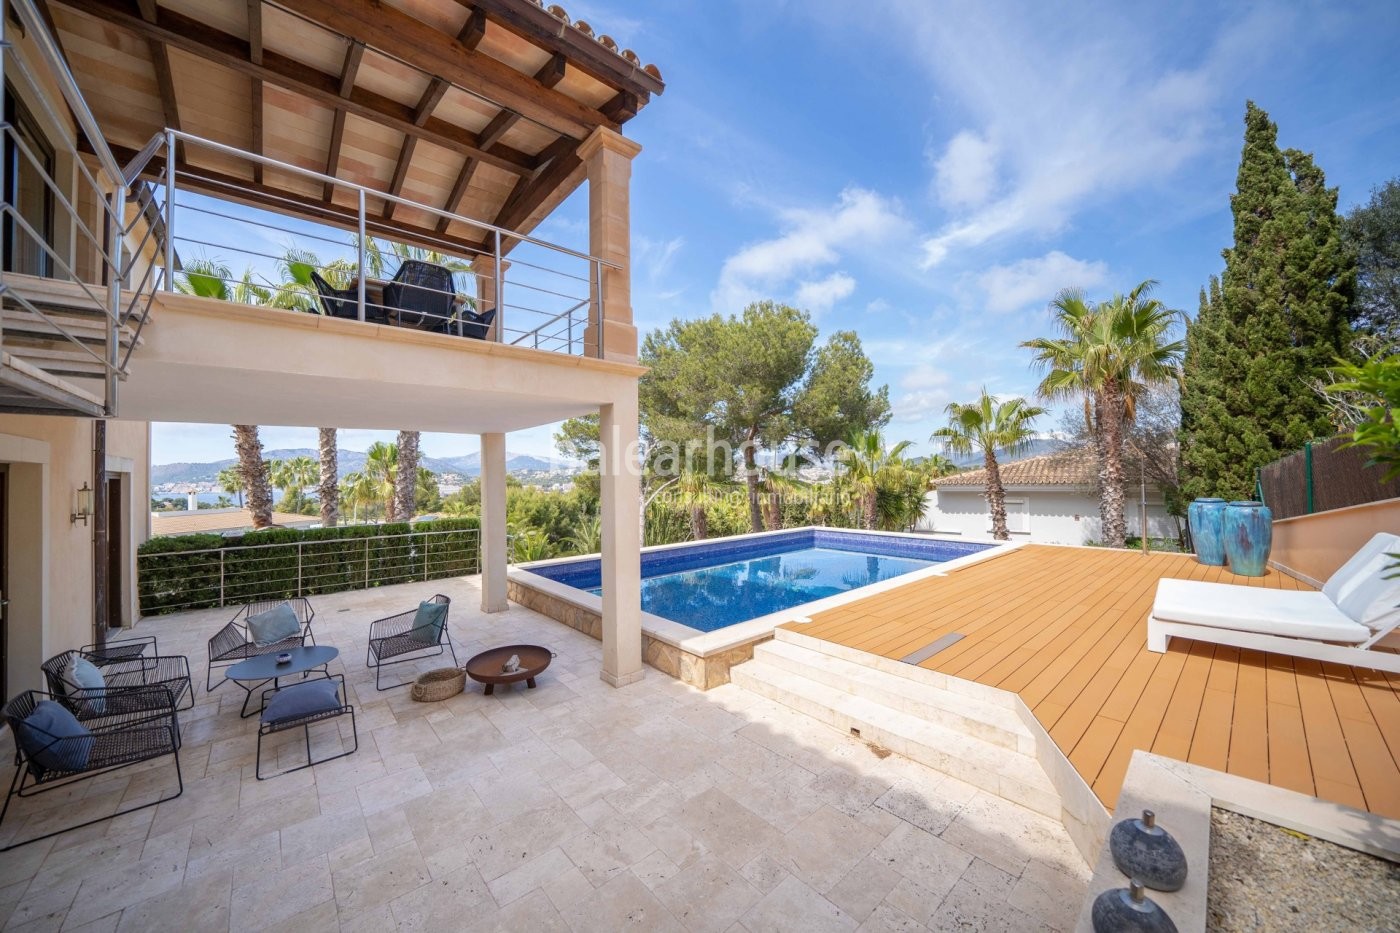 Villa de elegante y moderna arquitectura mediterránea en Santa Ponsa con vistas hasta el mar